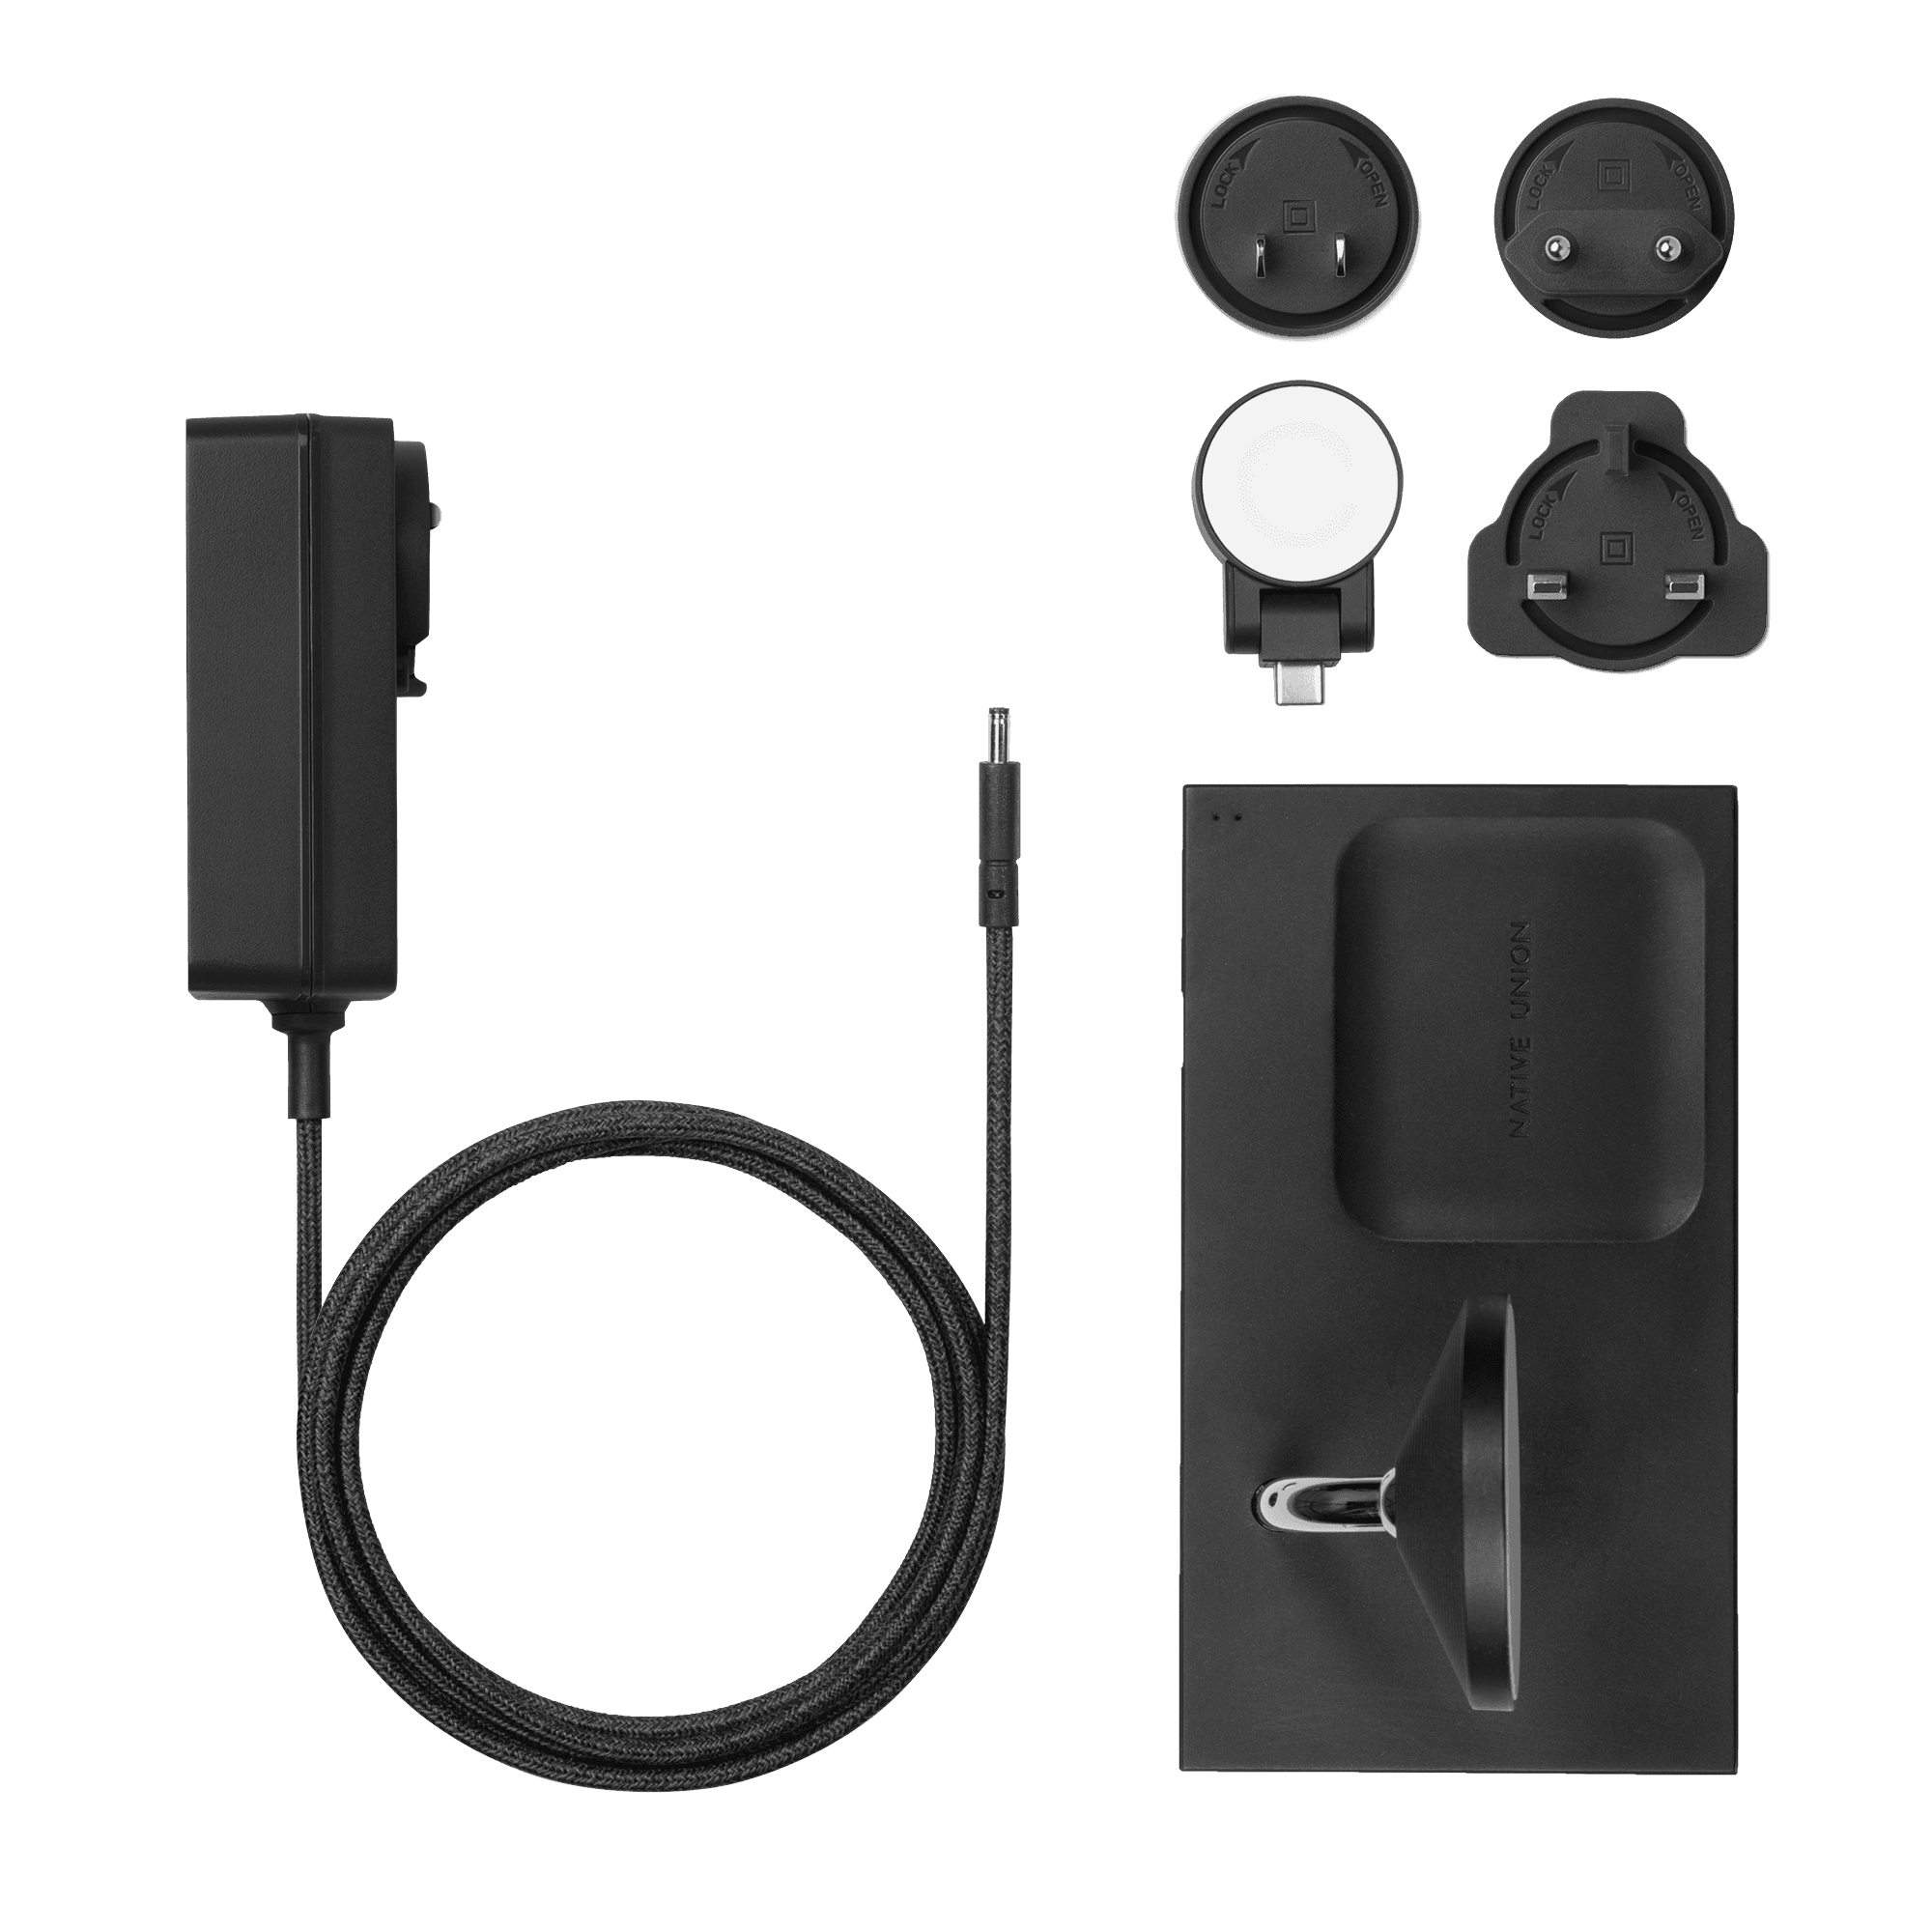 قاعدة شحن لاسلكي 3في1 أسود Snap Magnetic 3-in-1 Wireless Charger - NATIVE UNION - cG9zdDo1Nzg4ODk=